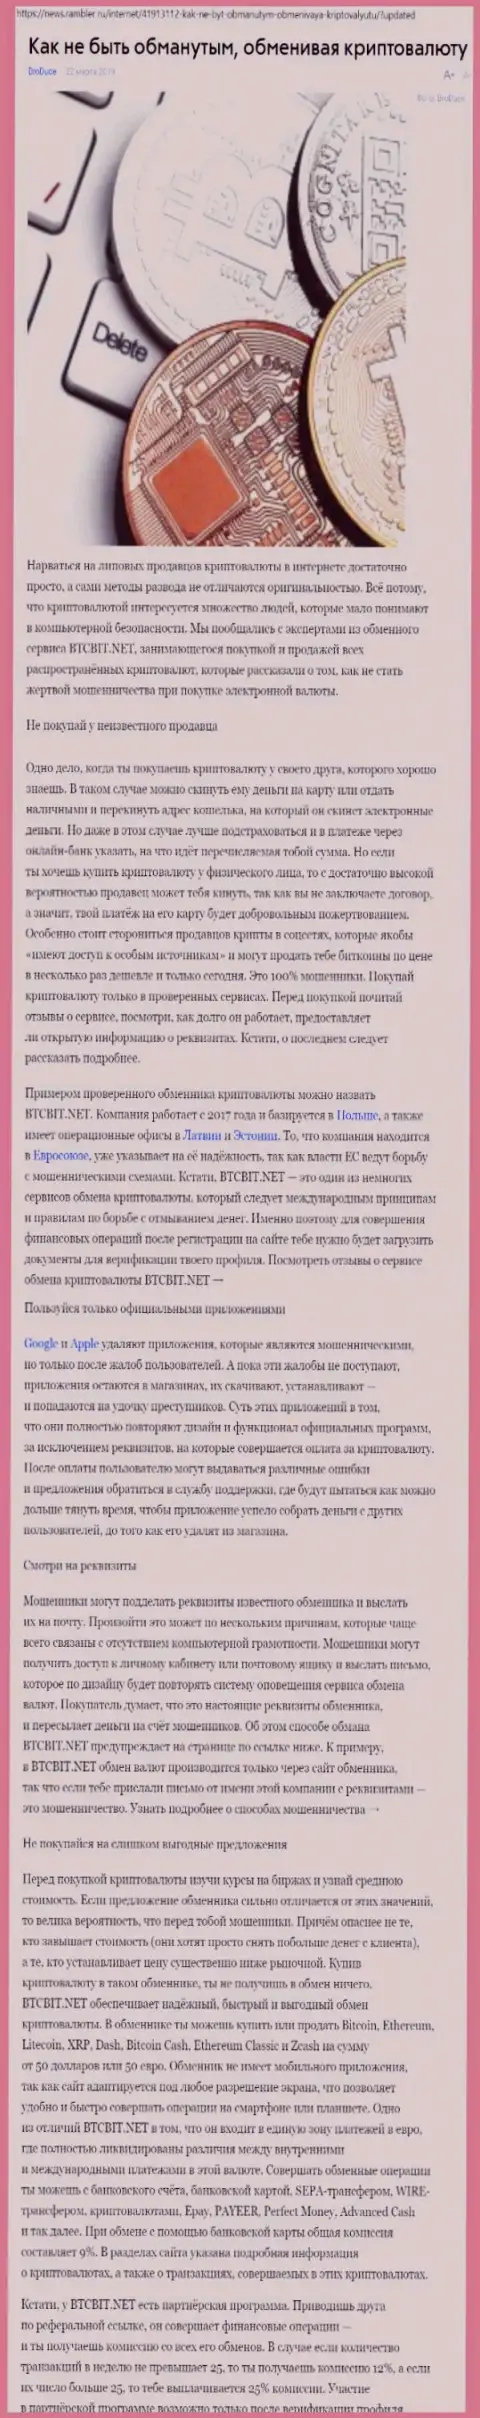 Статья об организации БТЦБИТ Нет на news rambler ru